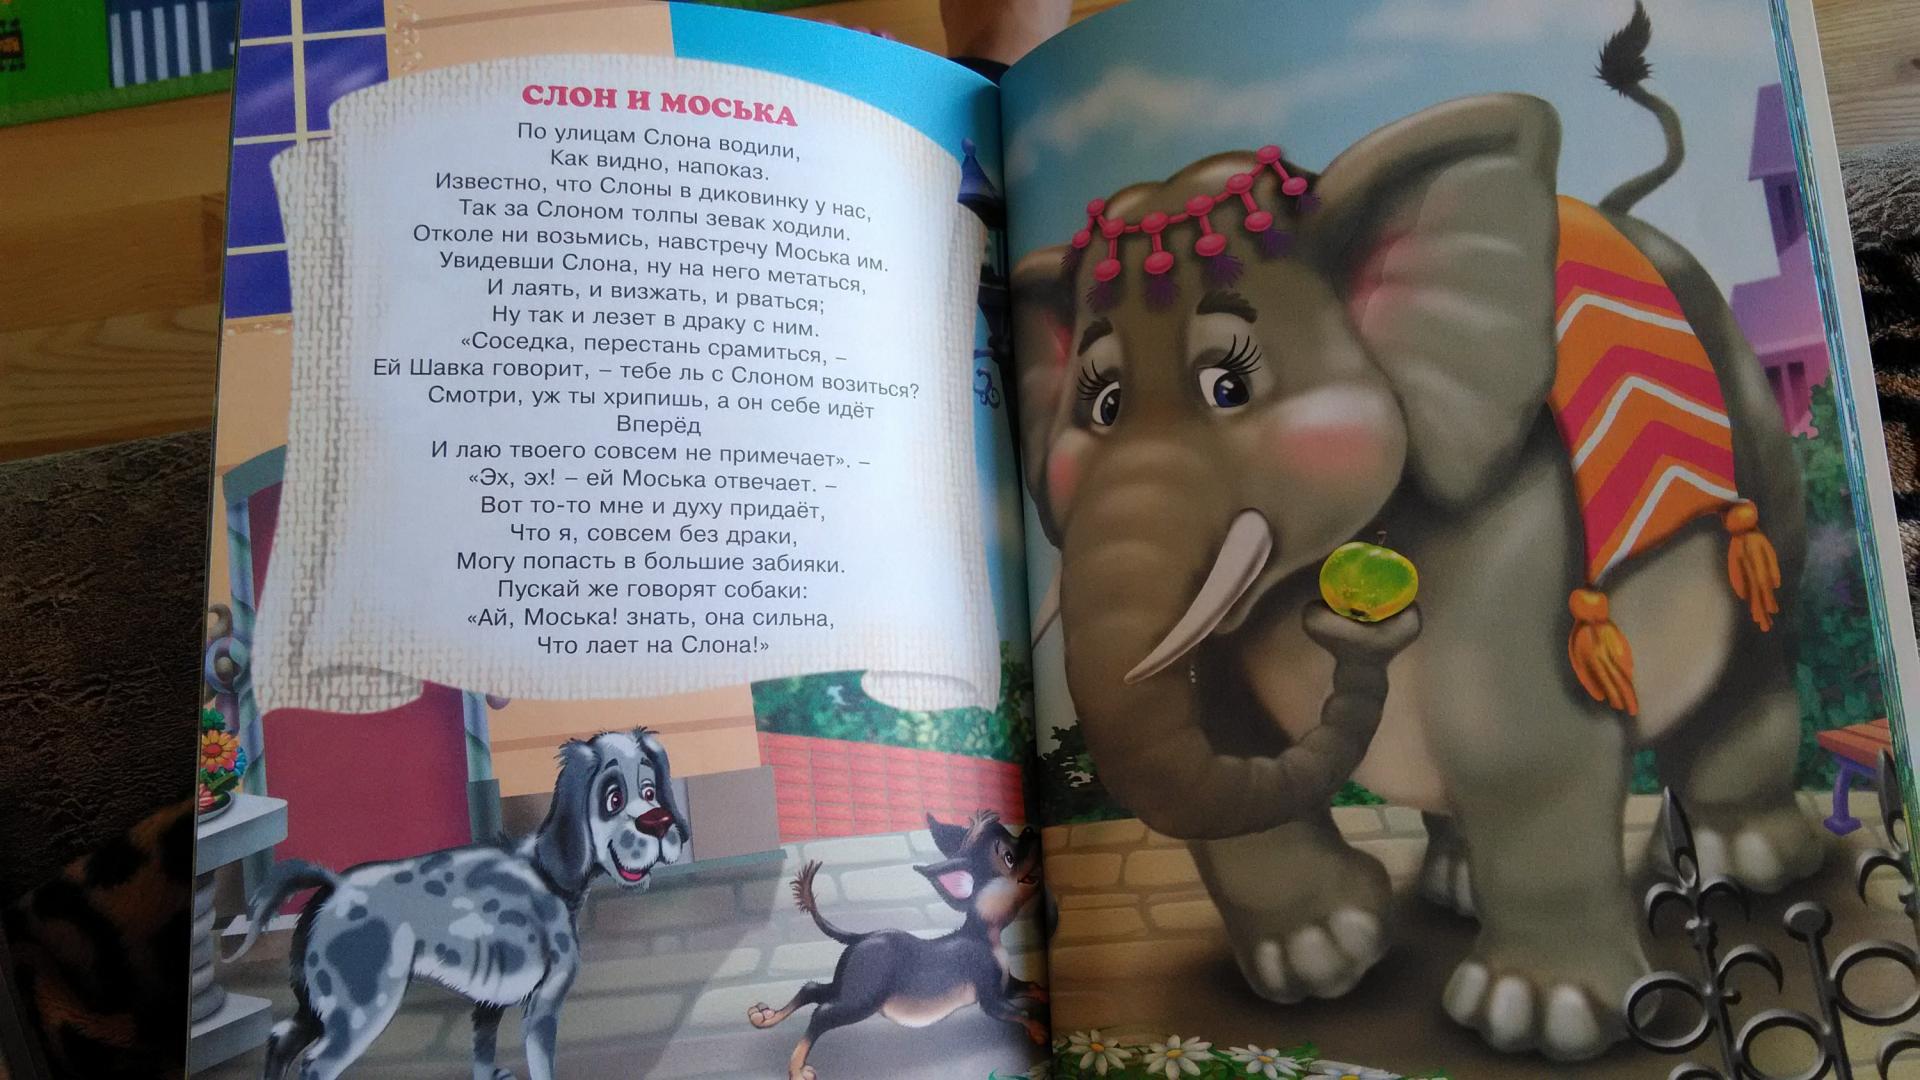 Моська крылова читать. По улице слона водили басня Крылова. Басня слон и моська Крылов. Крылов слон и моська текст. Слон и моська басня книга.